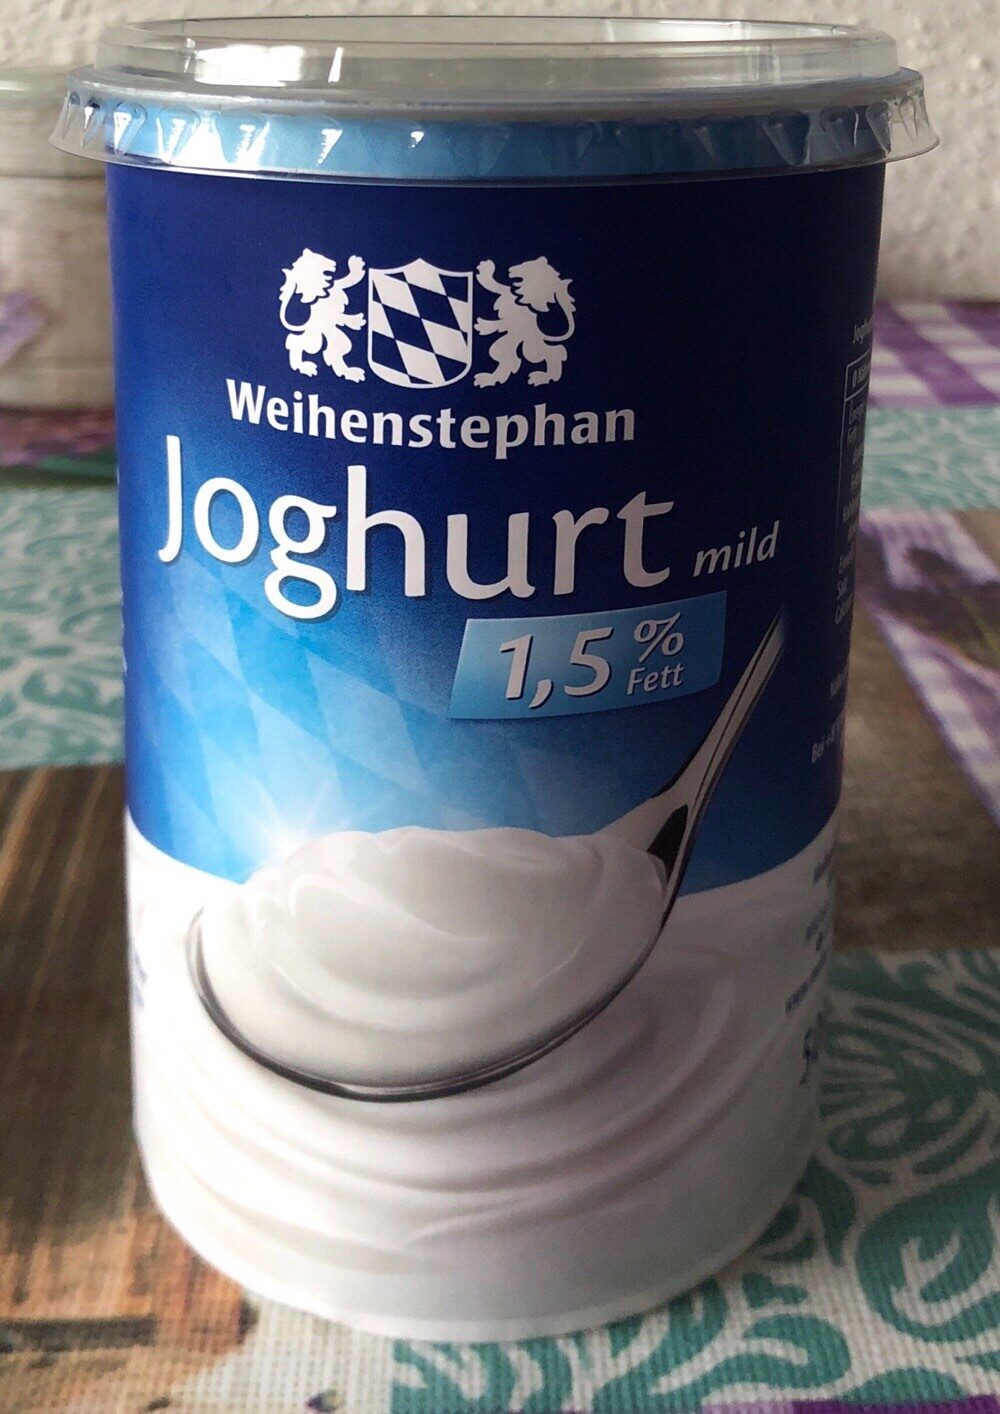 Joghurt mild 1,5% Fett - Produkt